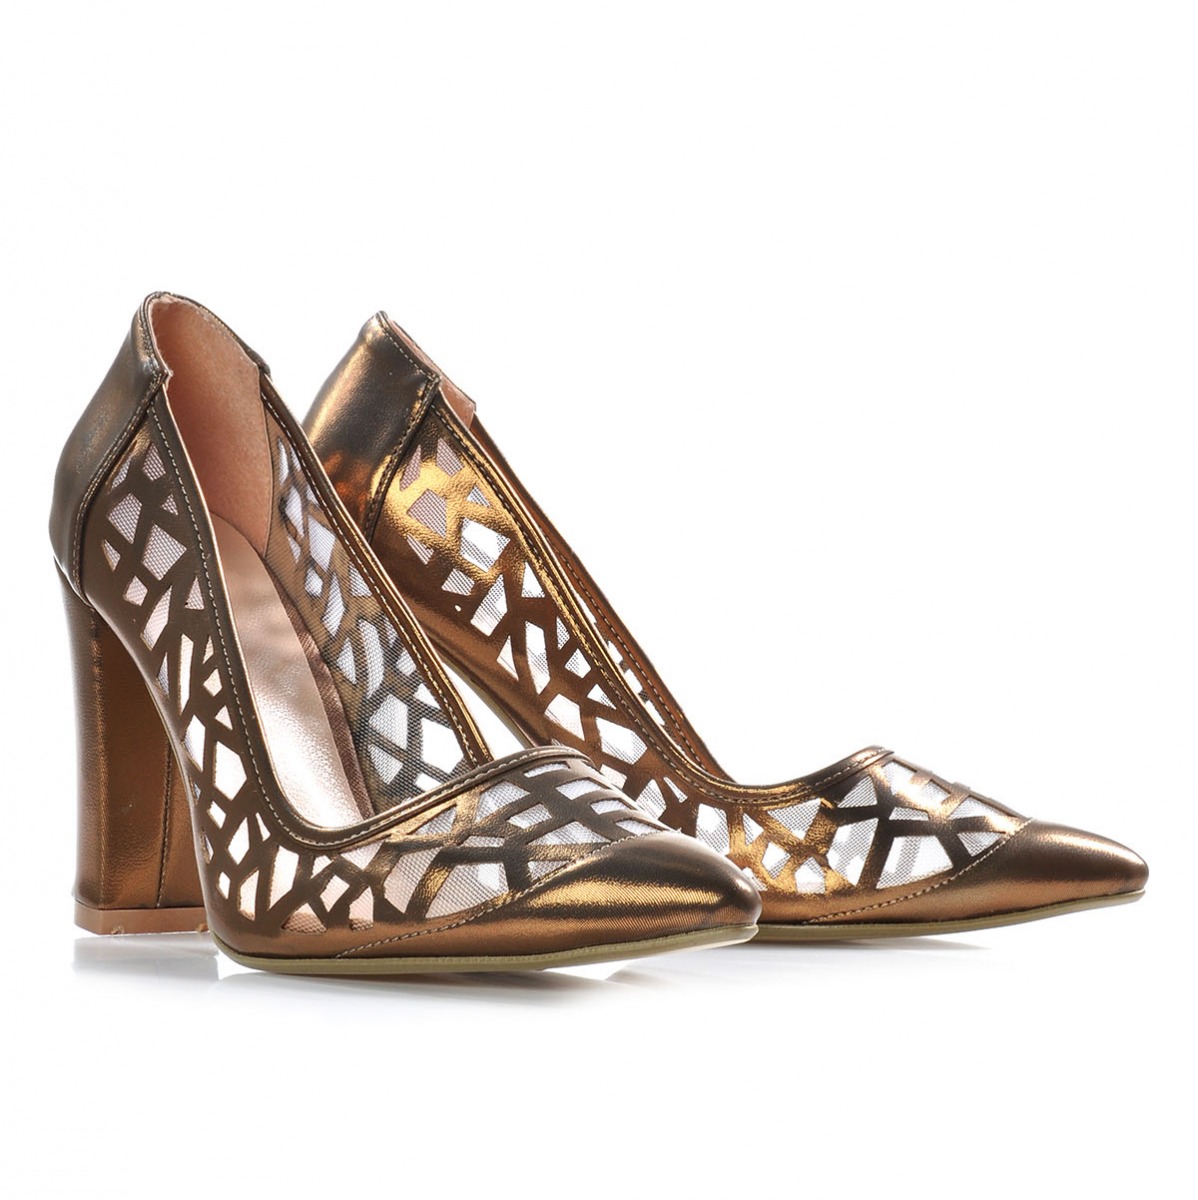 Flo Kadın  Bronz Klasik Topuklu Ayakkabı VZN-324Y. 4